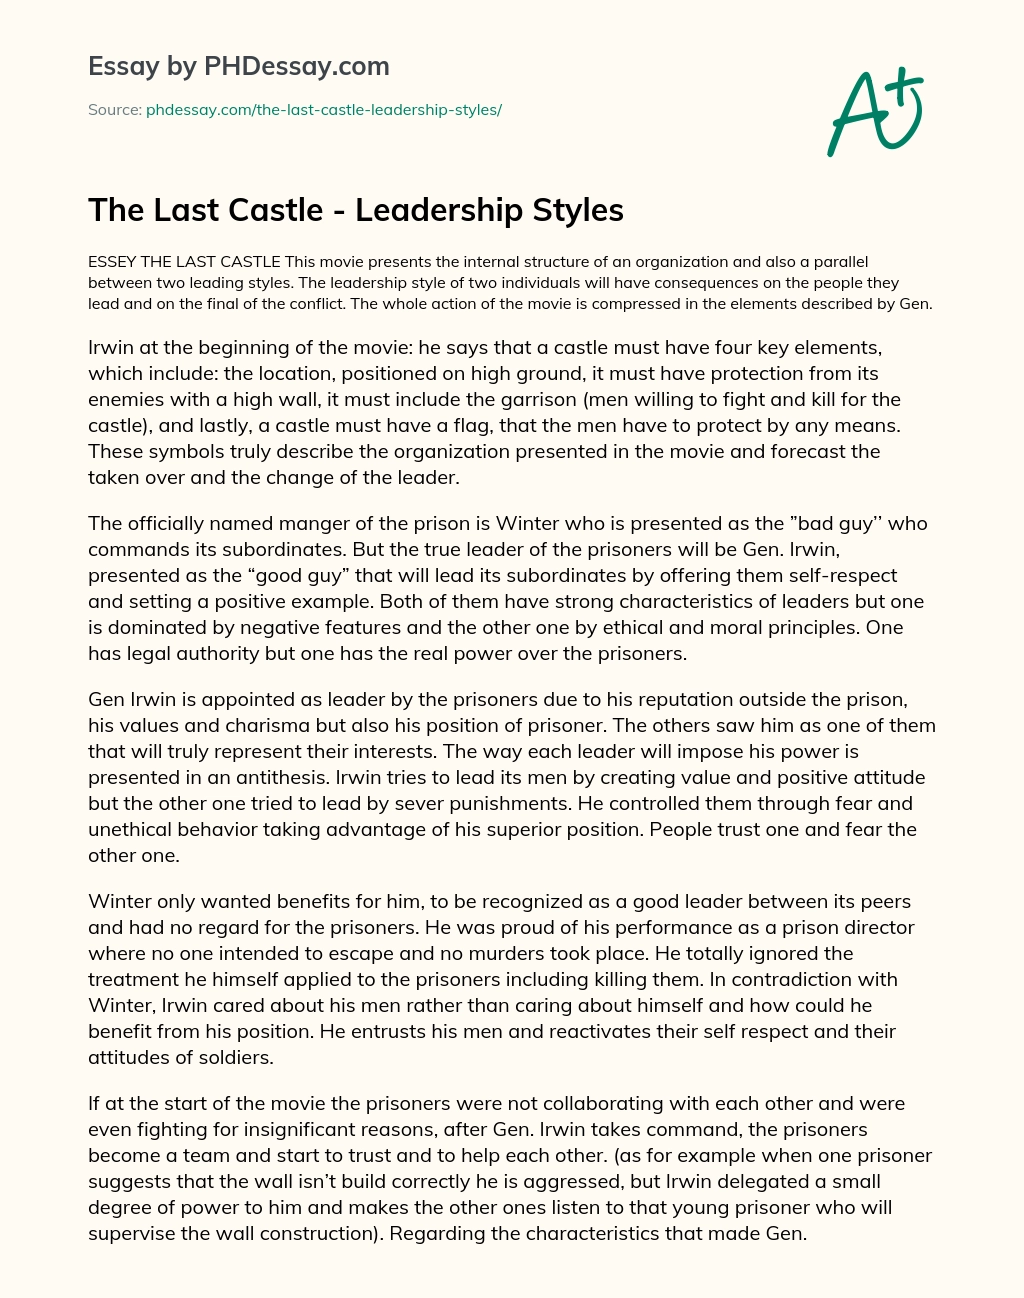 The Last Castle – Leadership Styles essay